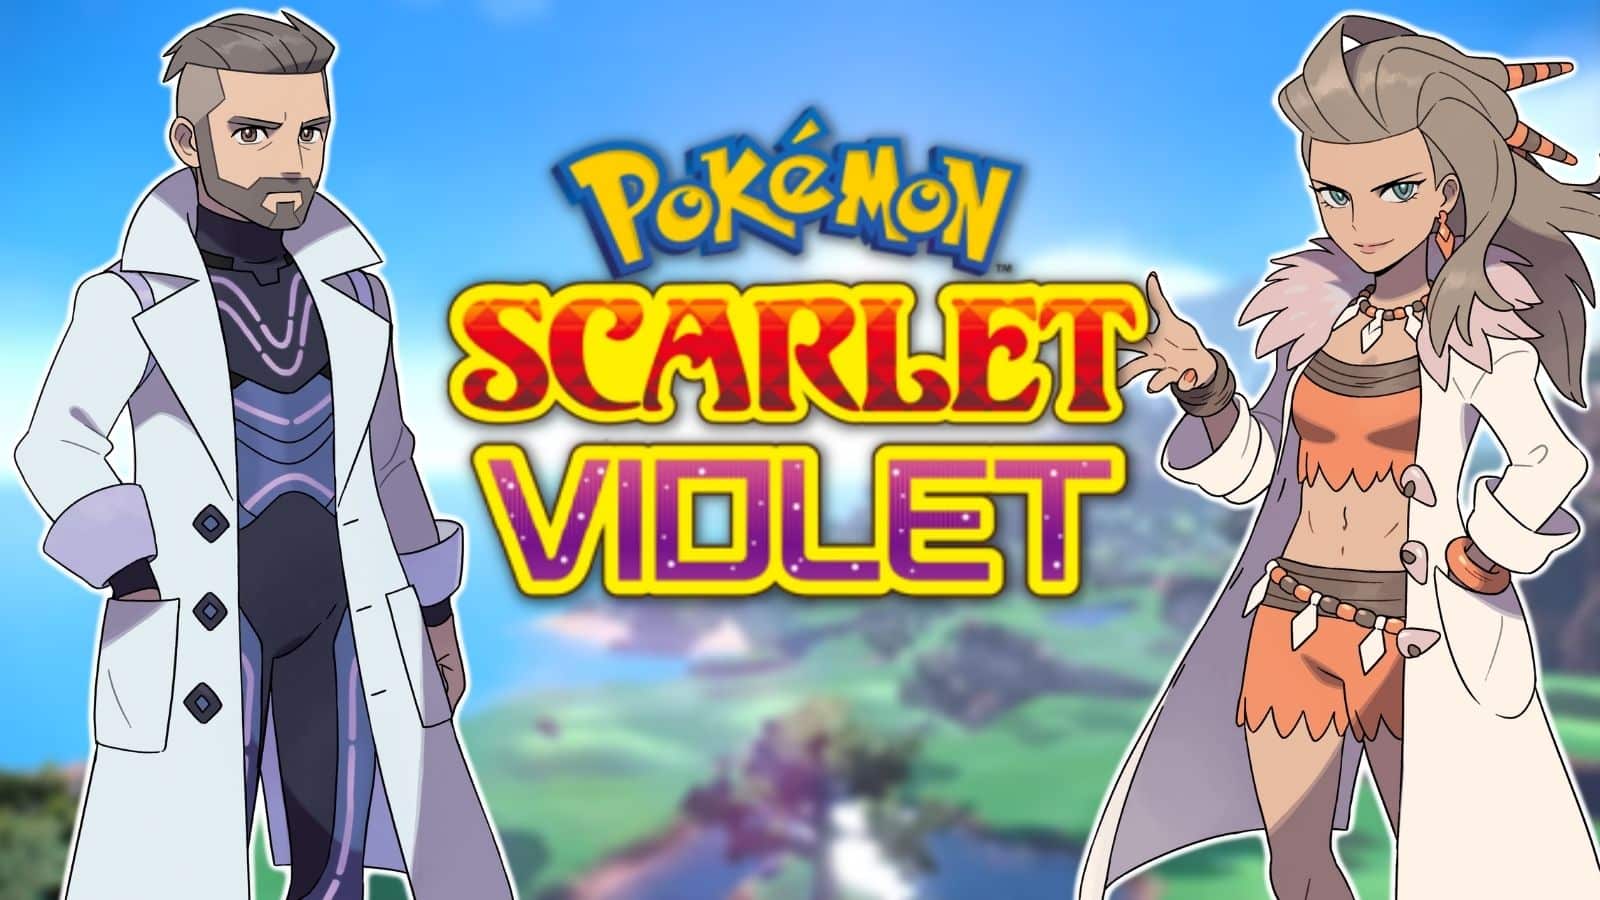 Customize your appearance — Pokémon Scarlet and Pokémon Violet